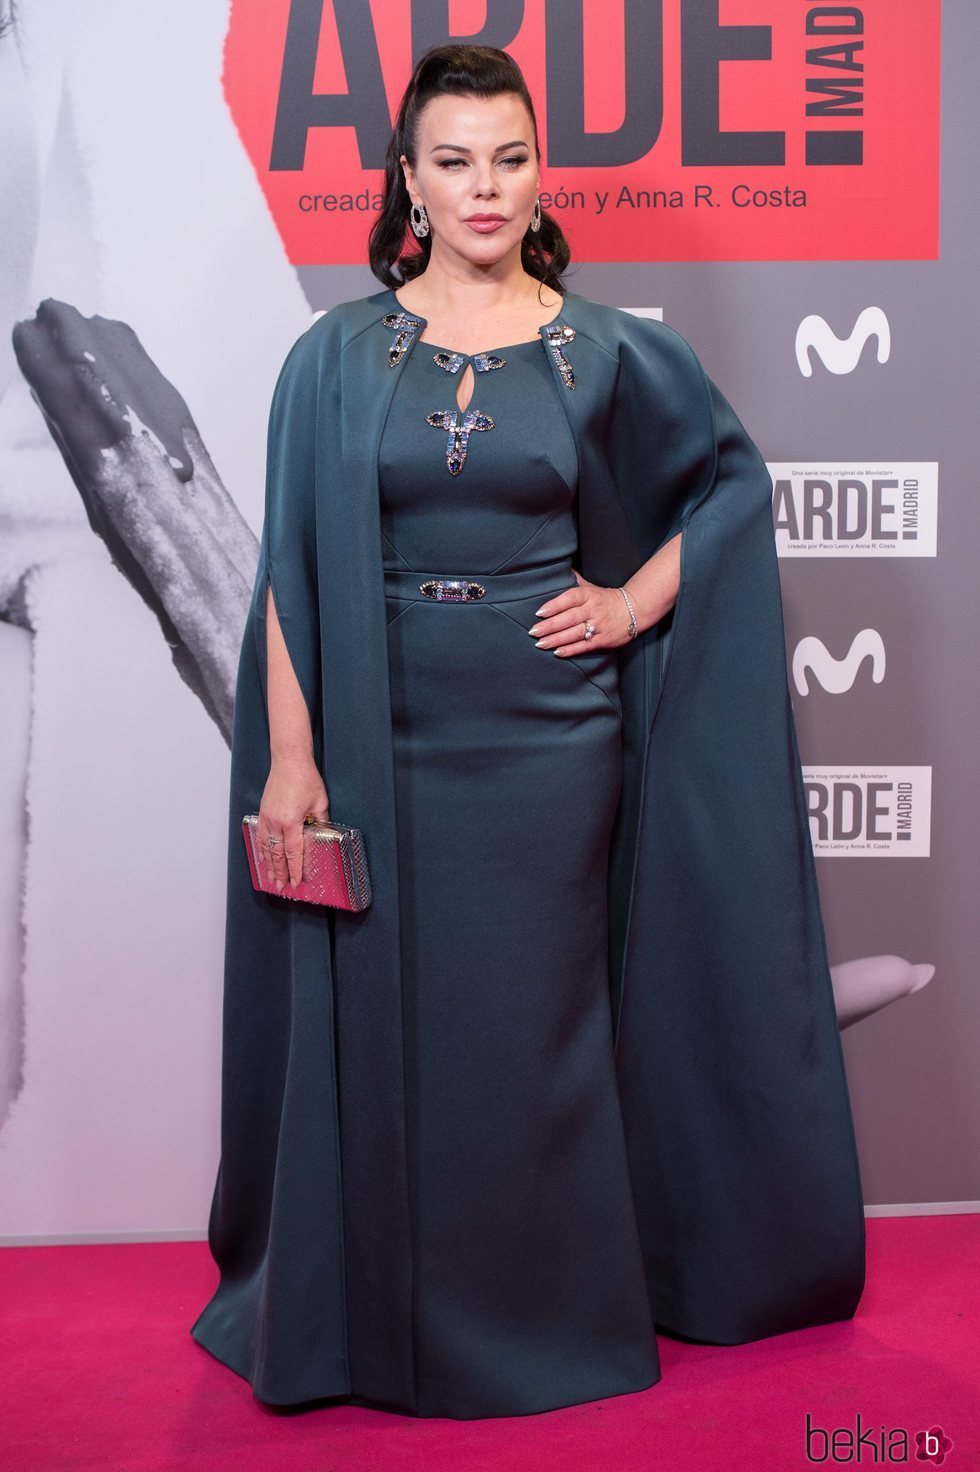 Debi Mazar en el estreno de 'Arde Madrid'